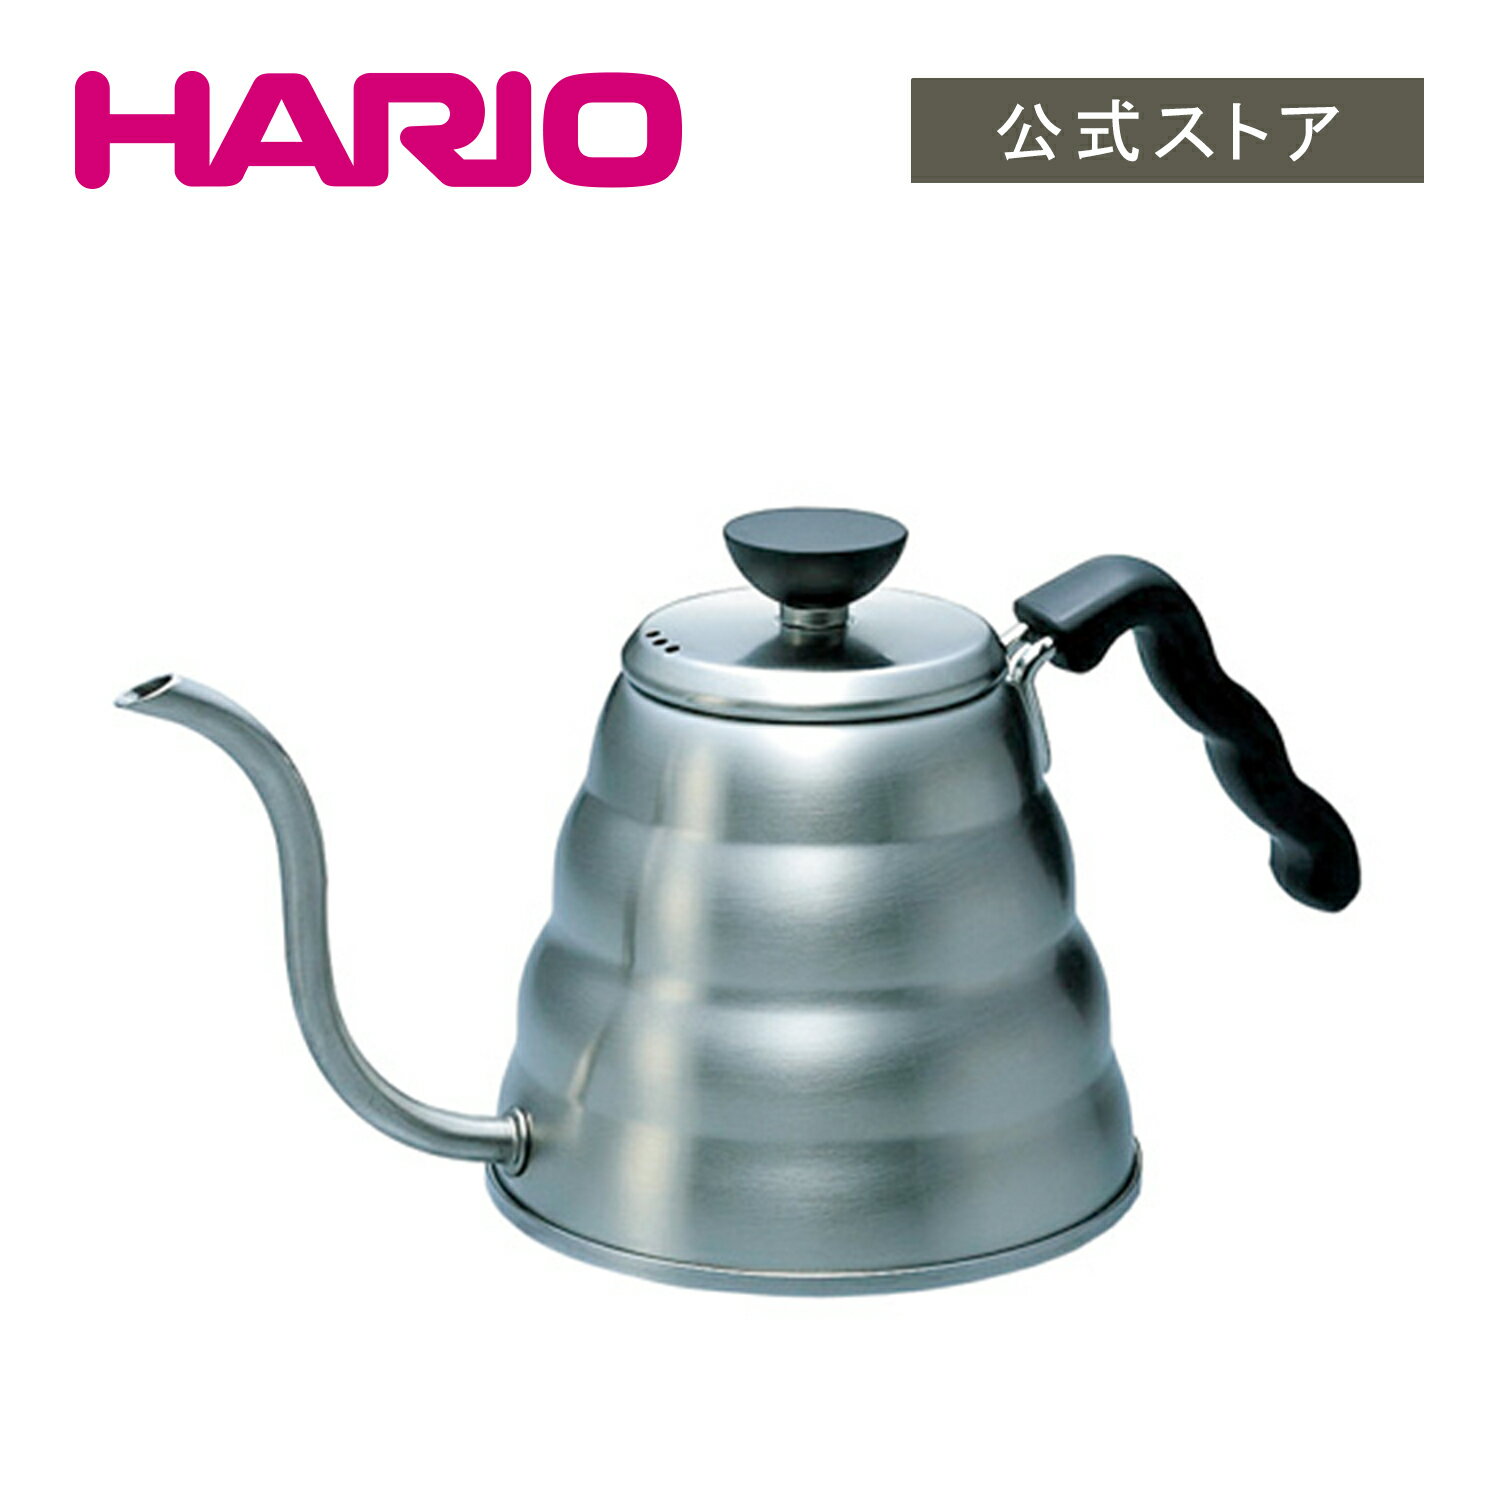 【公式ショップ】HARIO V60ドリップケトル ヴォーノ HARIO ハリオ コーヒー ポット 細口 注ぎやすい